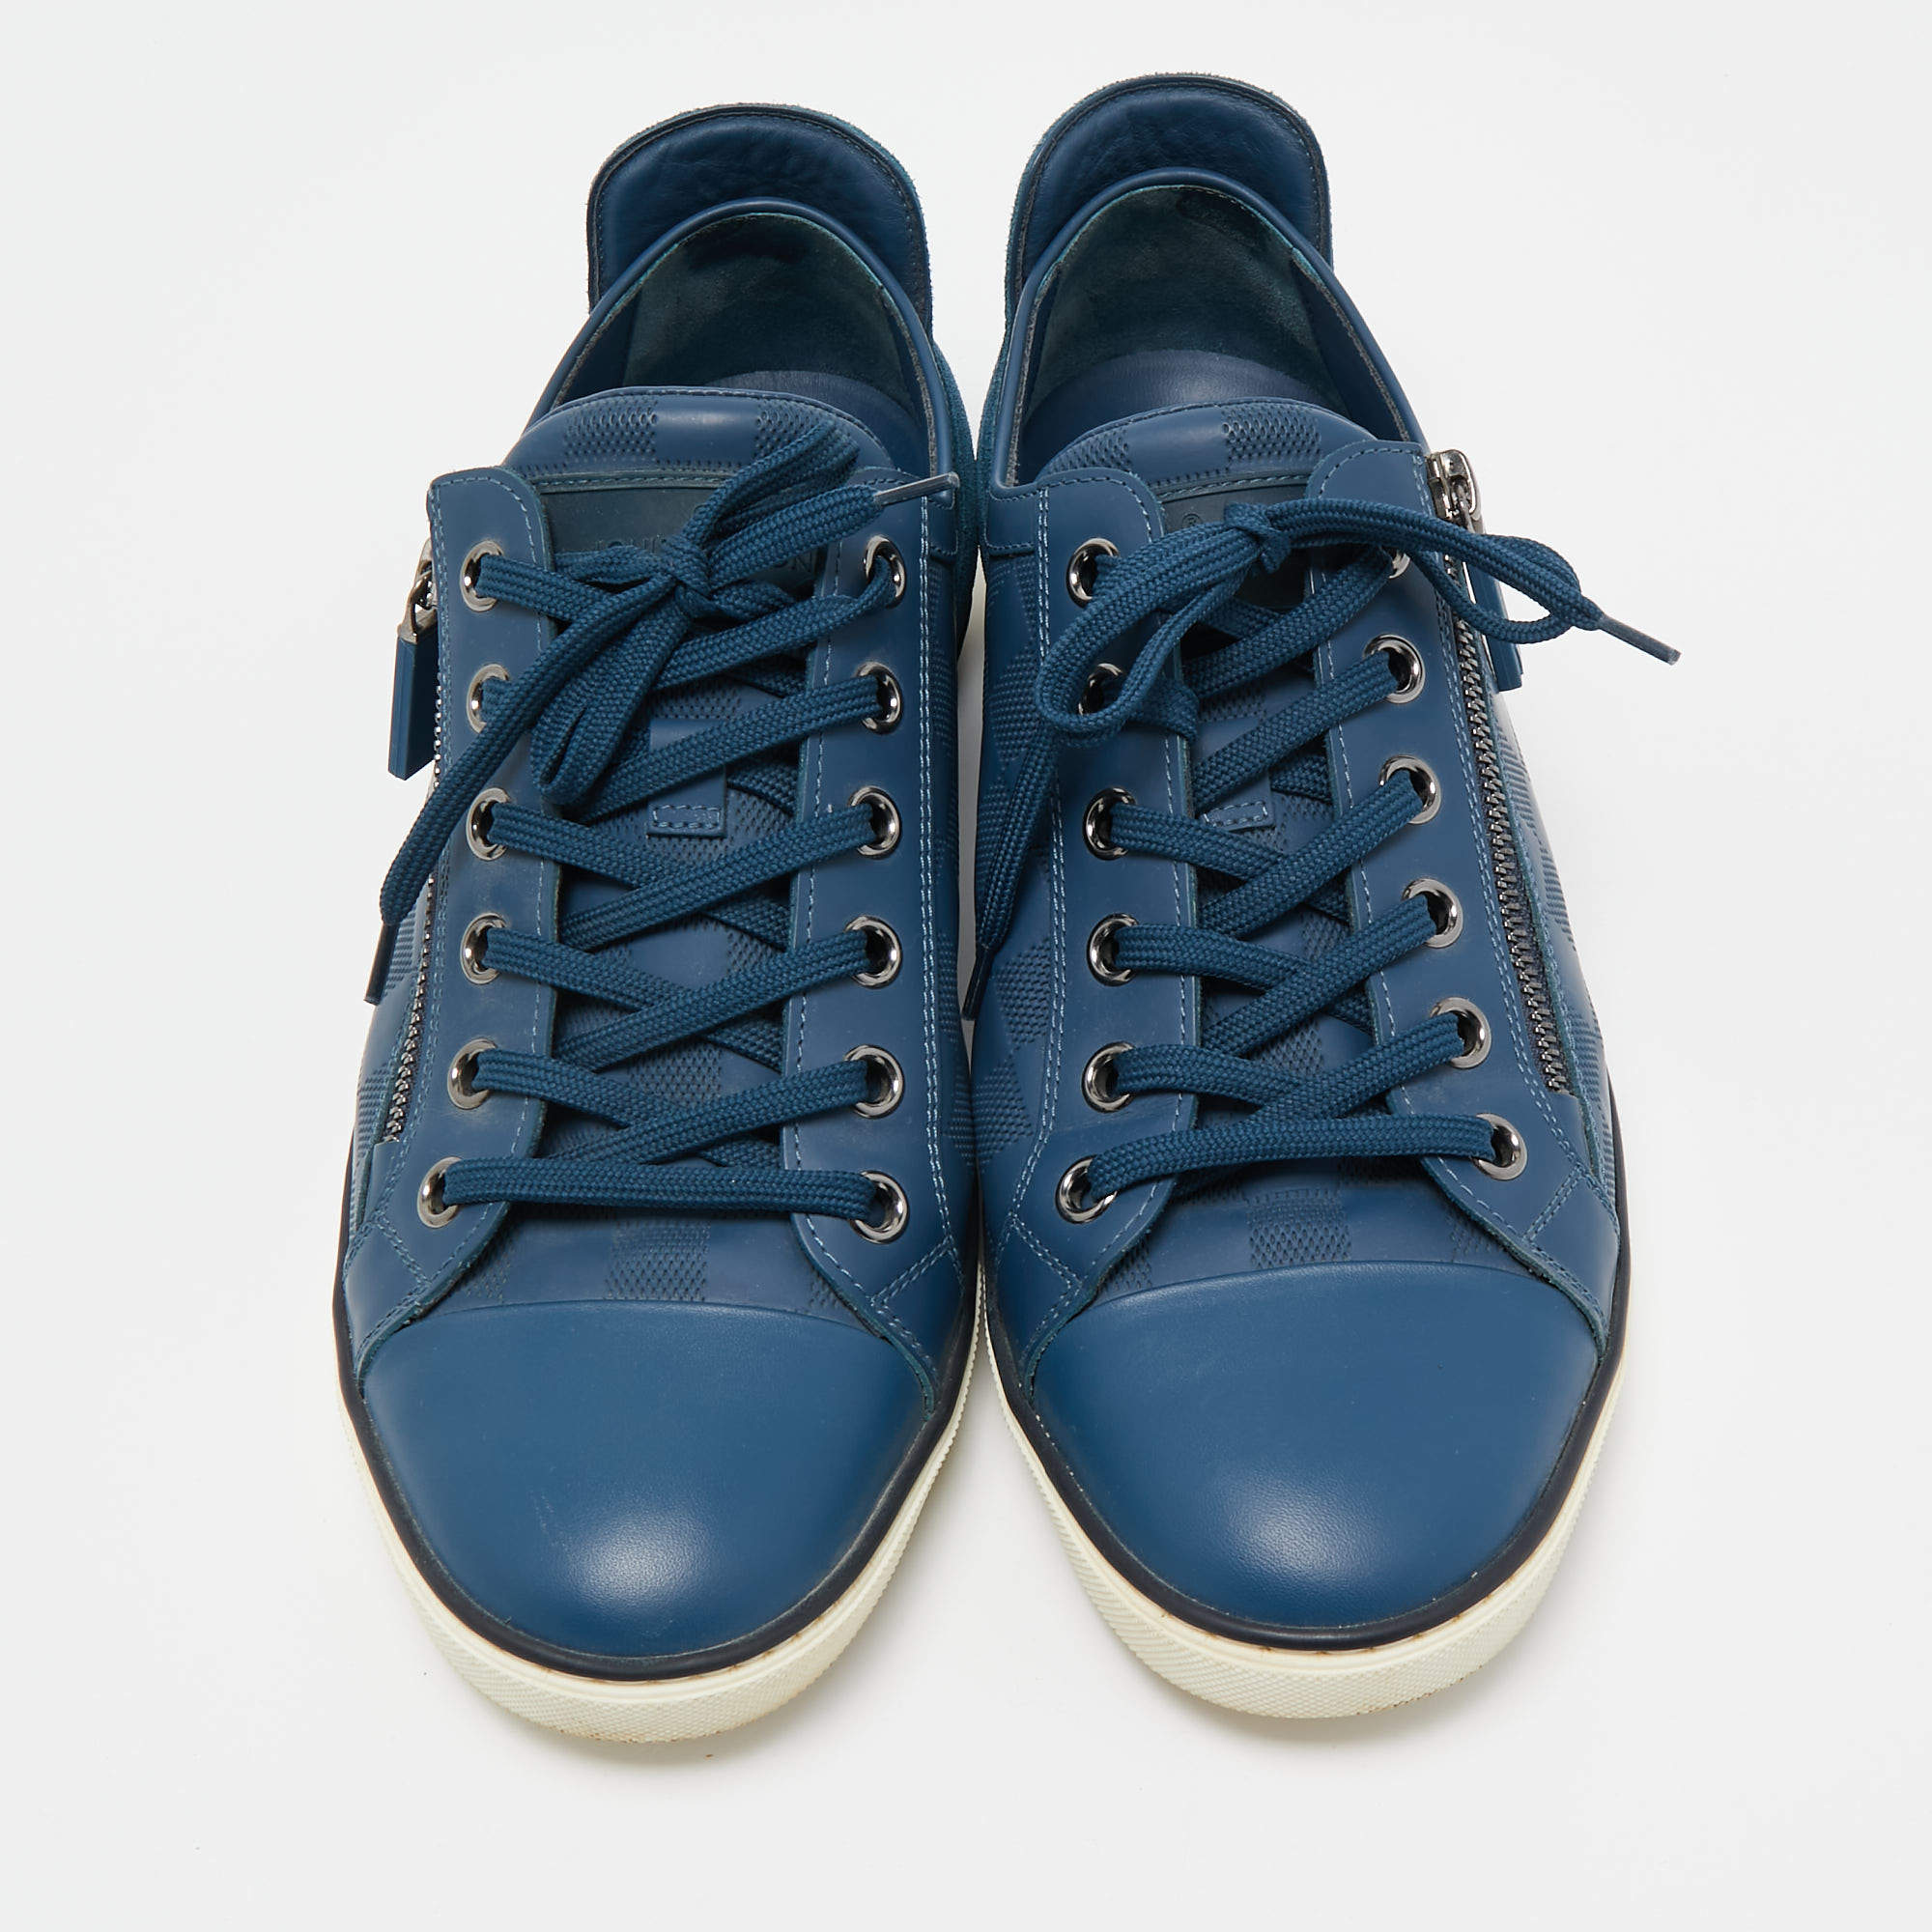 LOUIS VUITTON Damier Challenge Zip Up Sneakers 7.5 Blue 542850